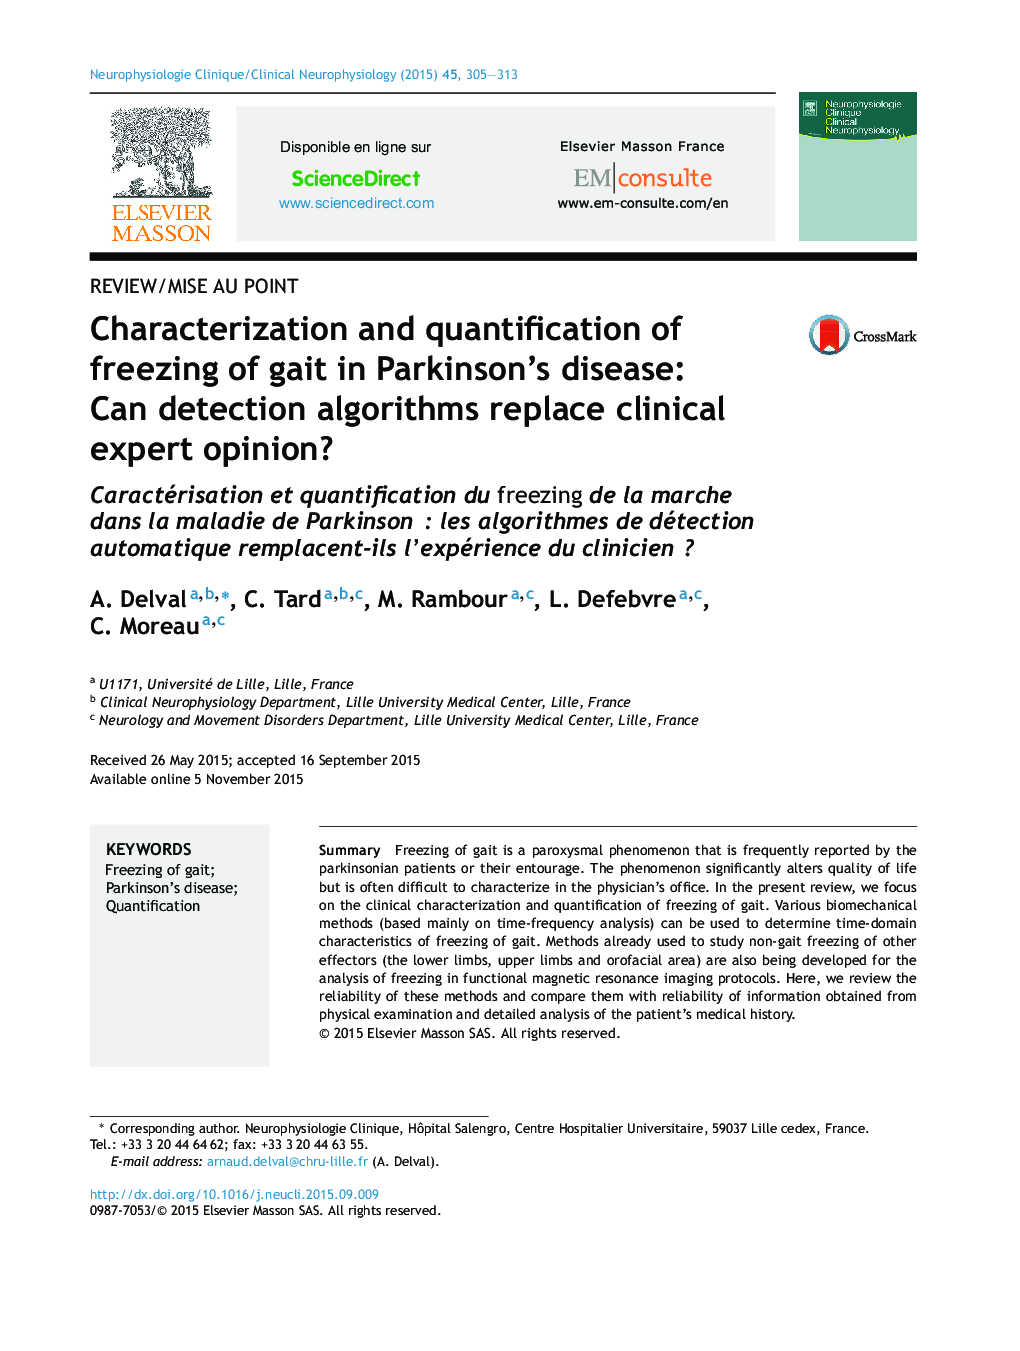 تشخیص و اندازه گیری یخ زدن راه رفتن در بیماری پارکینسون: آیا الگوریتم های تشخیص جایگزین نظر کارشناس بالینی می شوند؟ 